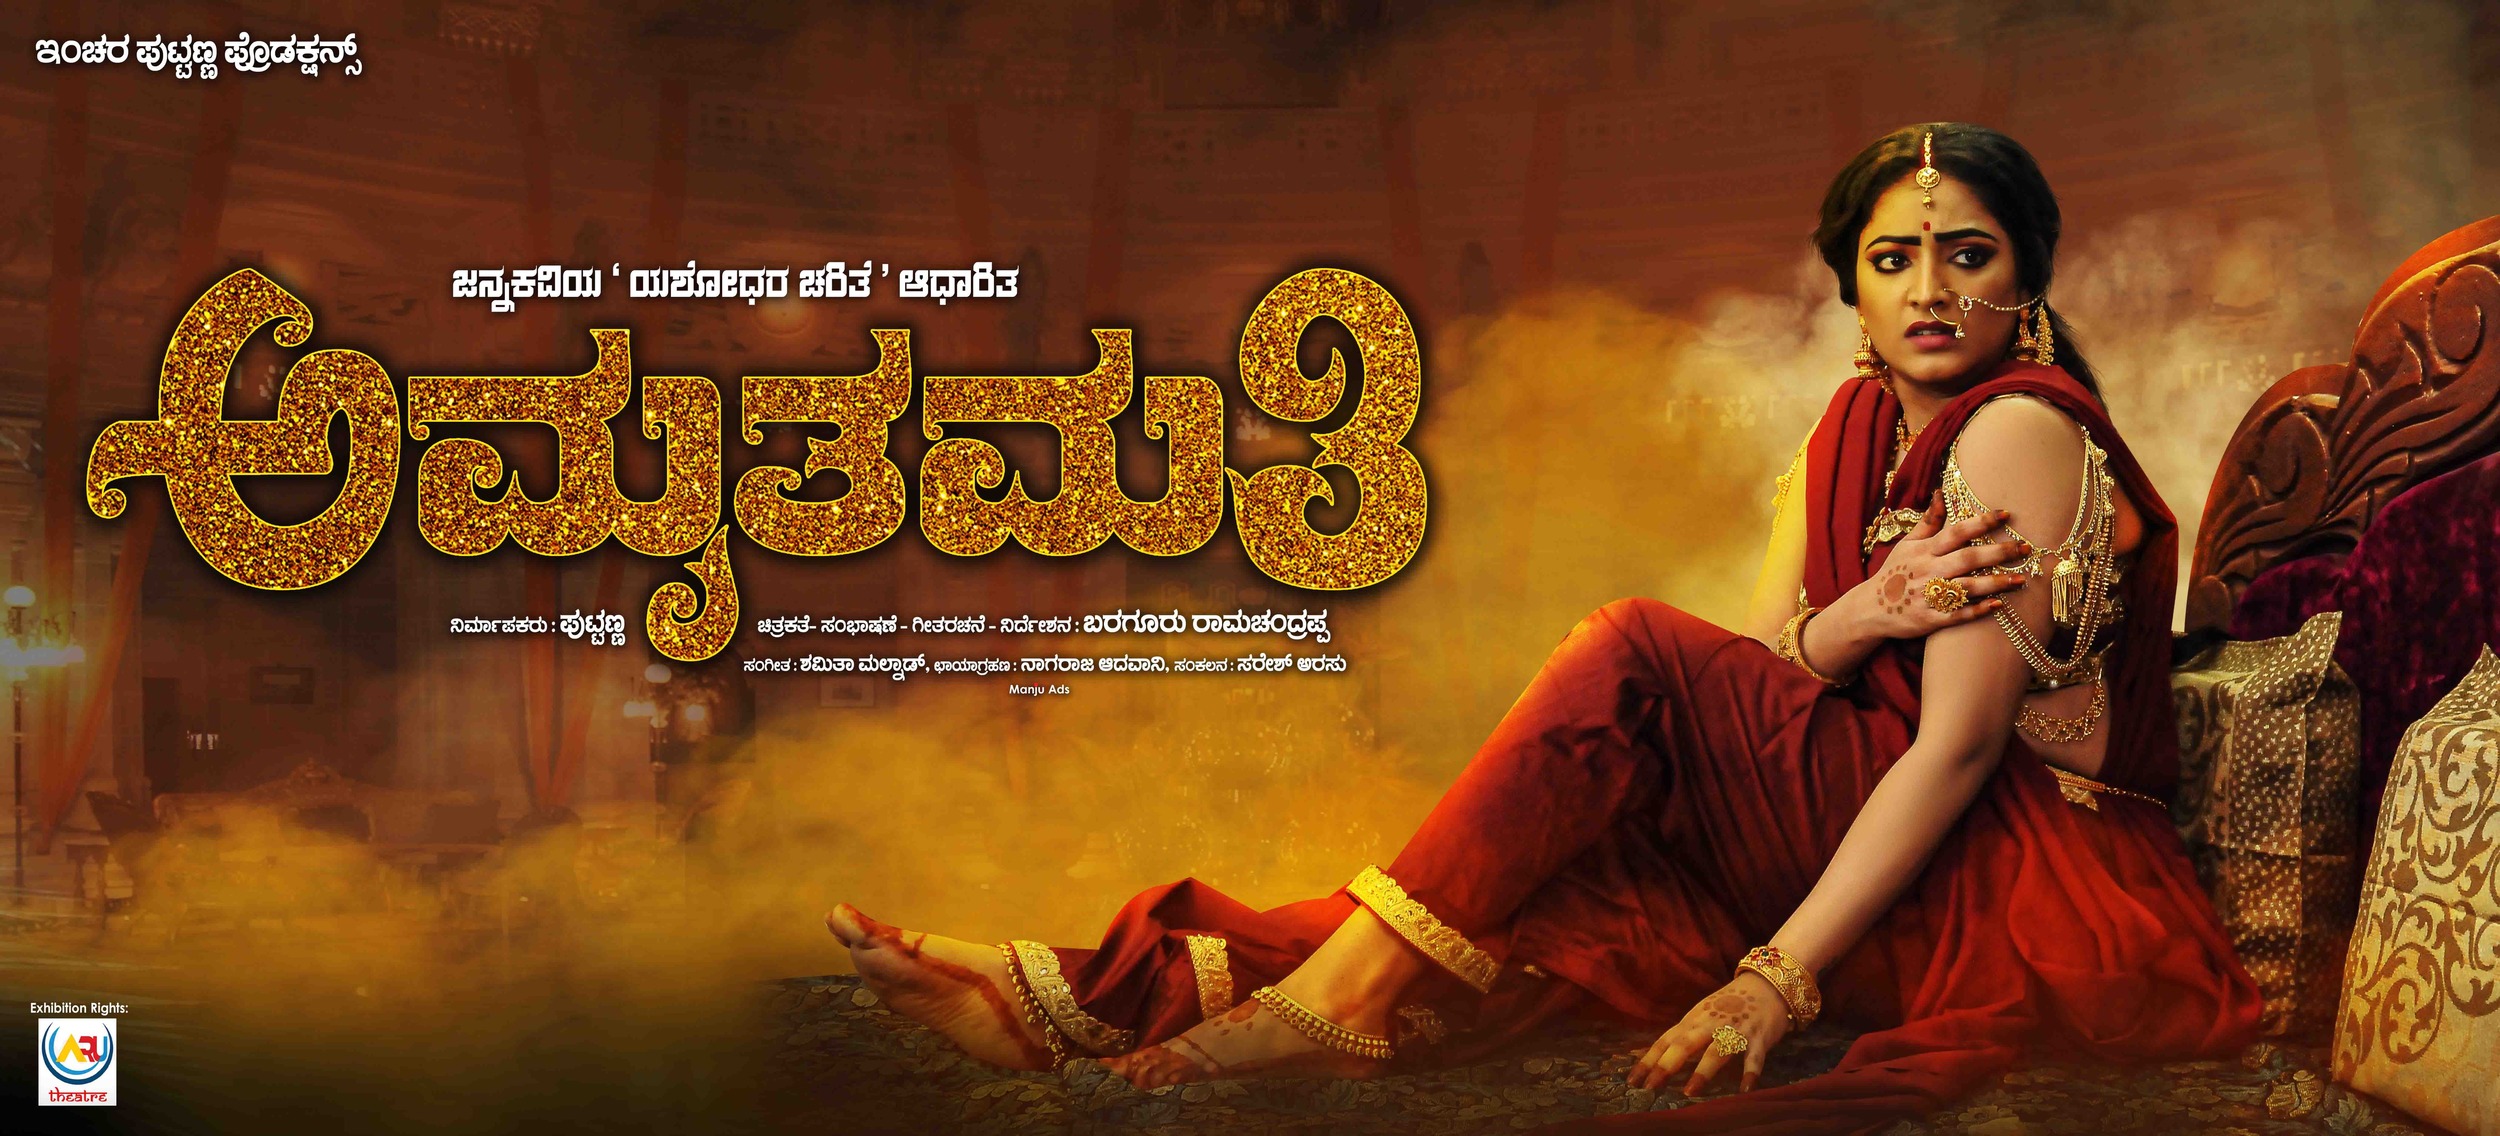 Mega Sized Movie Poster Image for Amruthamathi (#5 of 10)